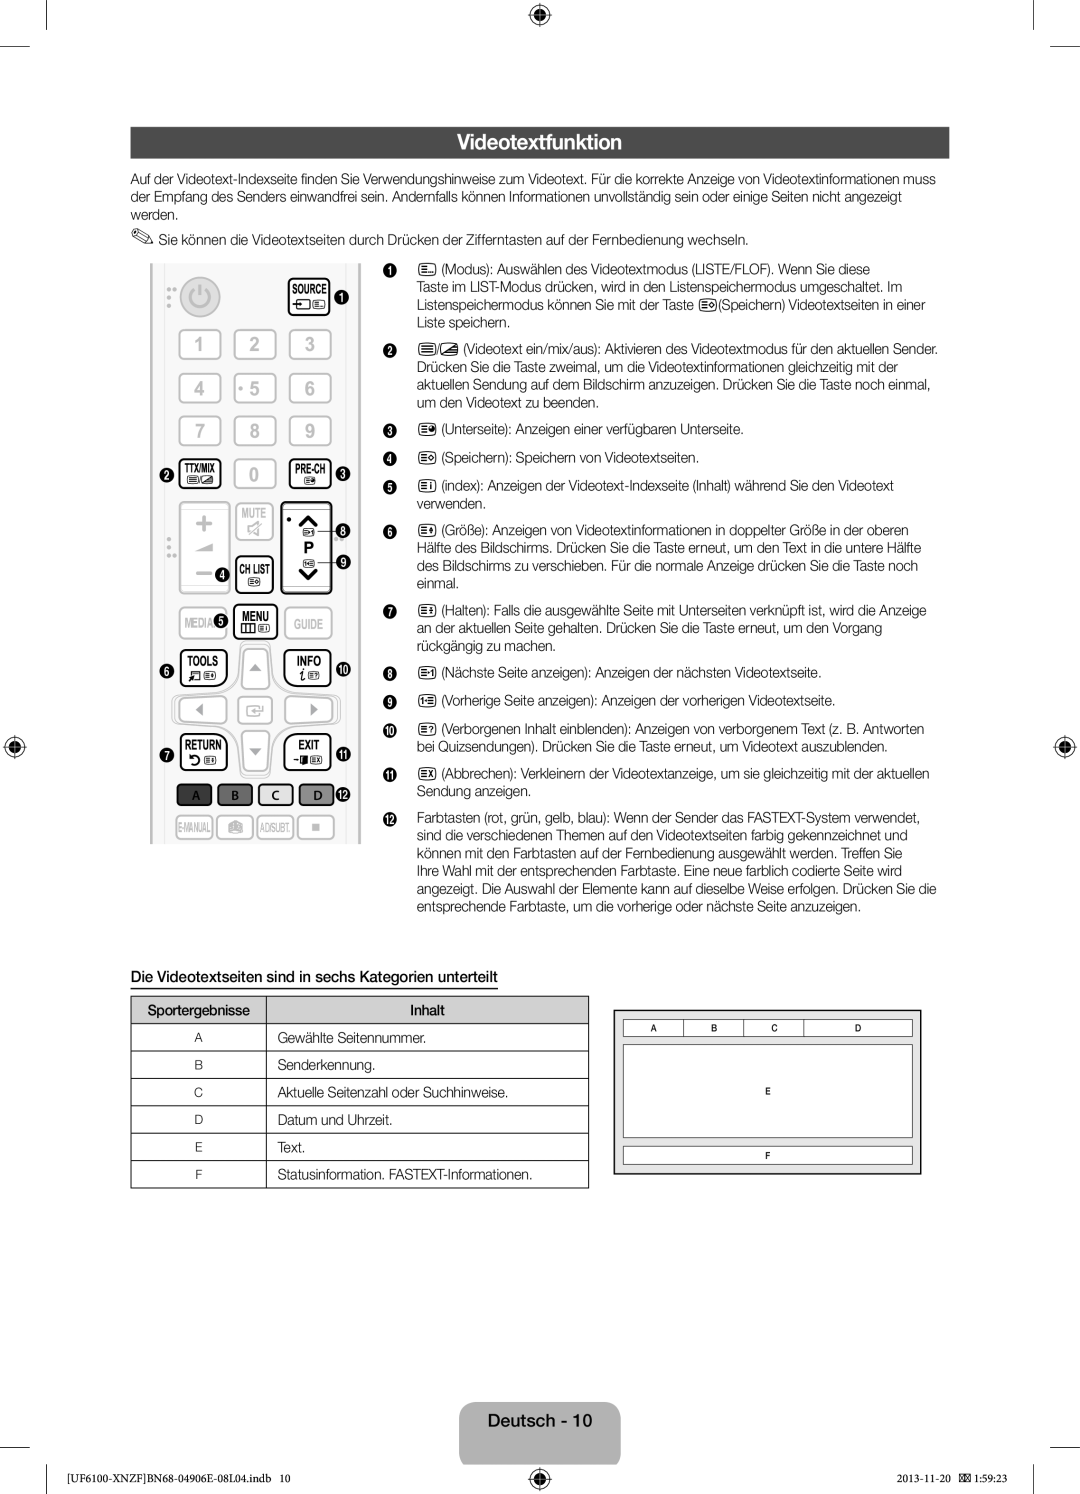 Samsung UE60F6100AWXZF manual Videotextfunktion, Die Videotextseiten sind in sechs Kategorien unterteilt, verwenden, einmal 